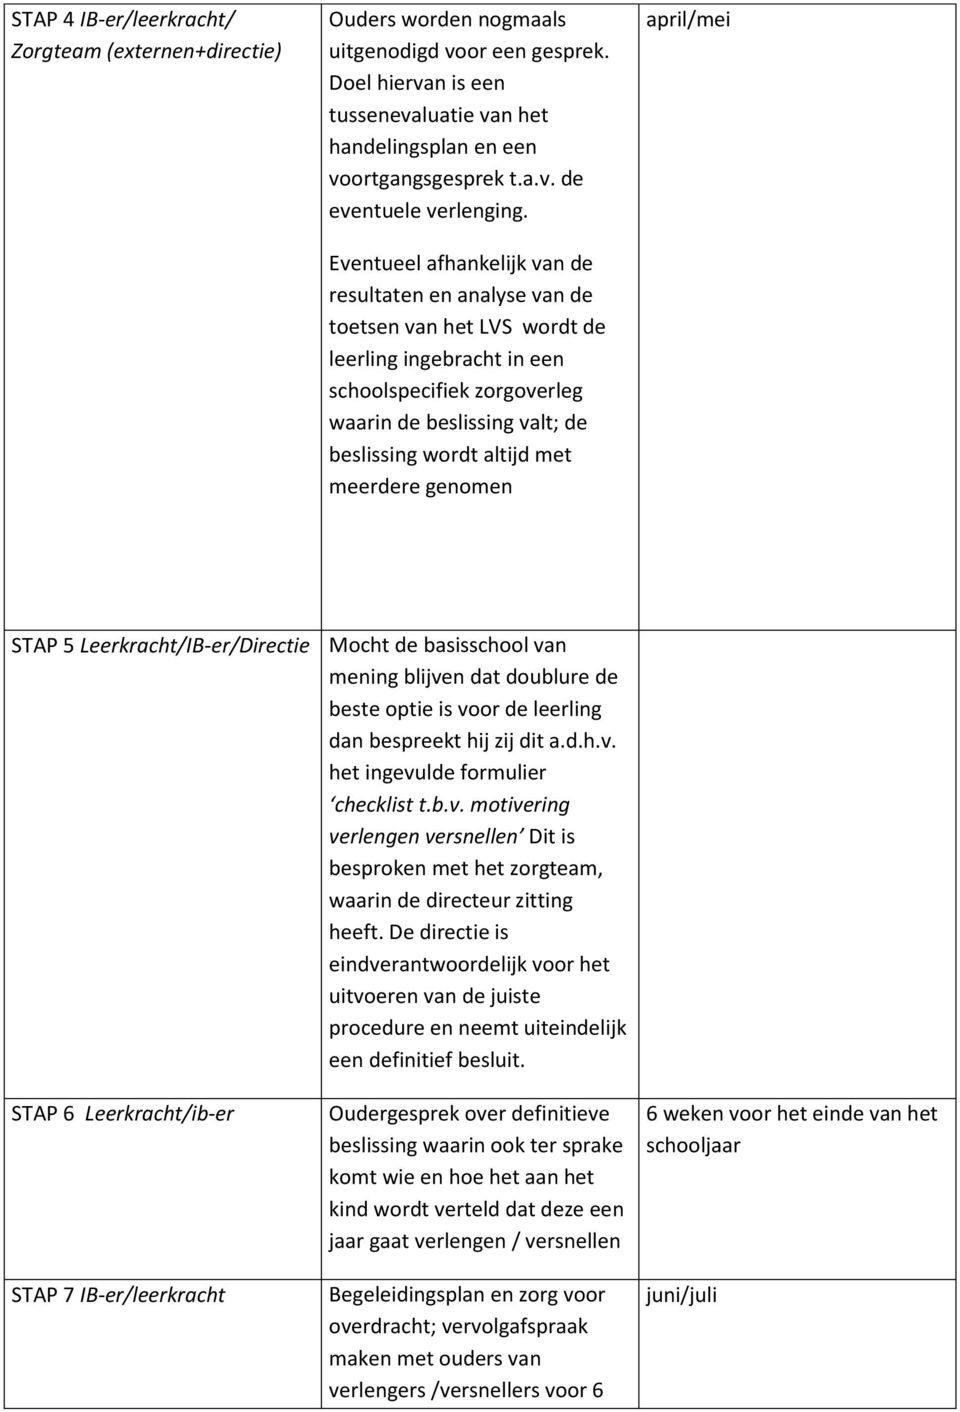 meerdere genomen april/mei STAP 5 Leerkracht/IB-er/Directie Mocht de basisschool van mening blijven dat doublure de beste optie is voor de leerling dan bespreekt hij zij dit a.d.h.v. het ingevulde formulier checklist t.